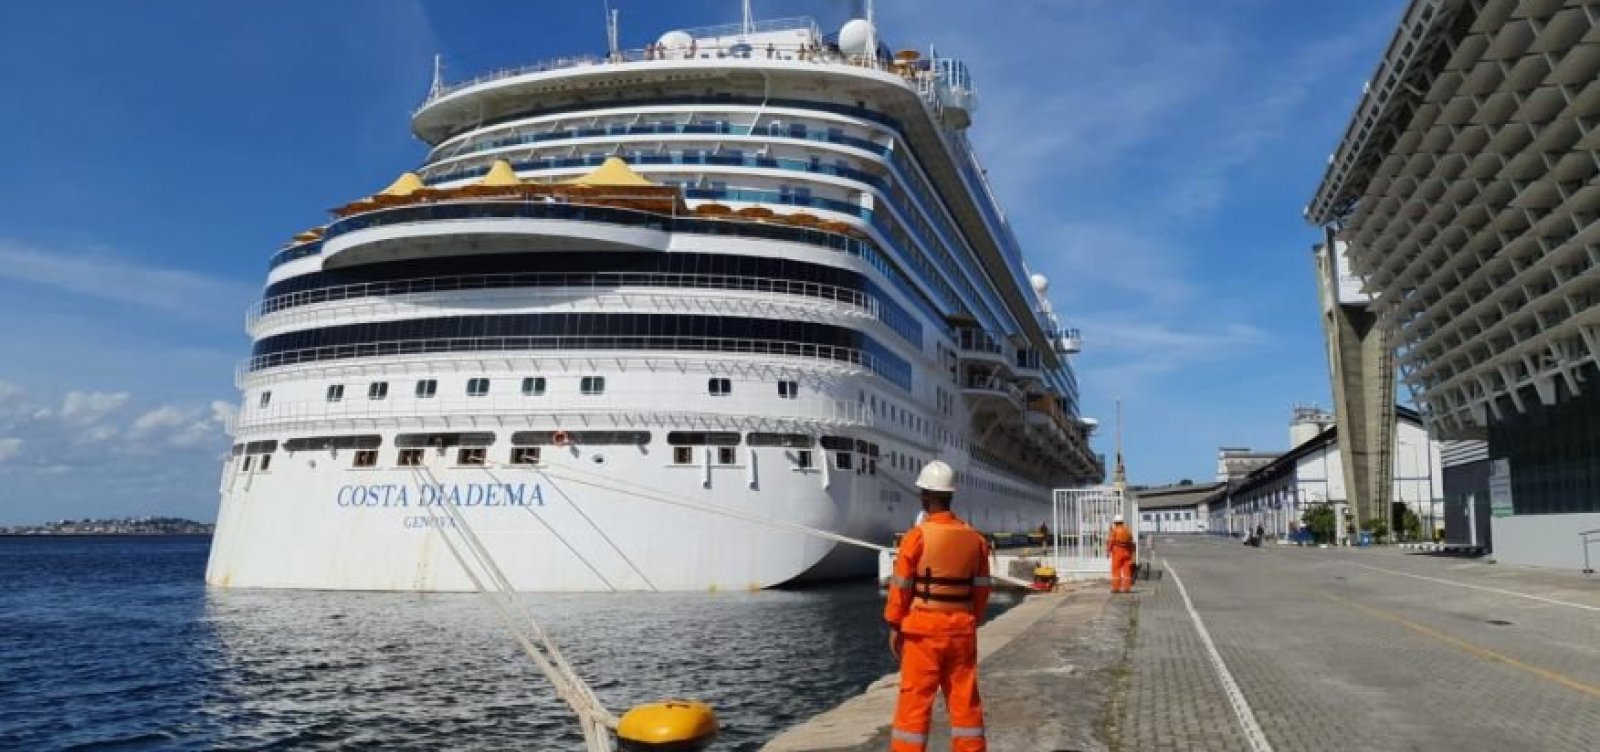 Anvisa suspende navios de cruzeiro na Bahia, após solicitação da Saúde 